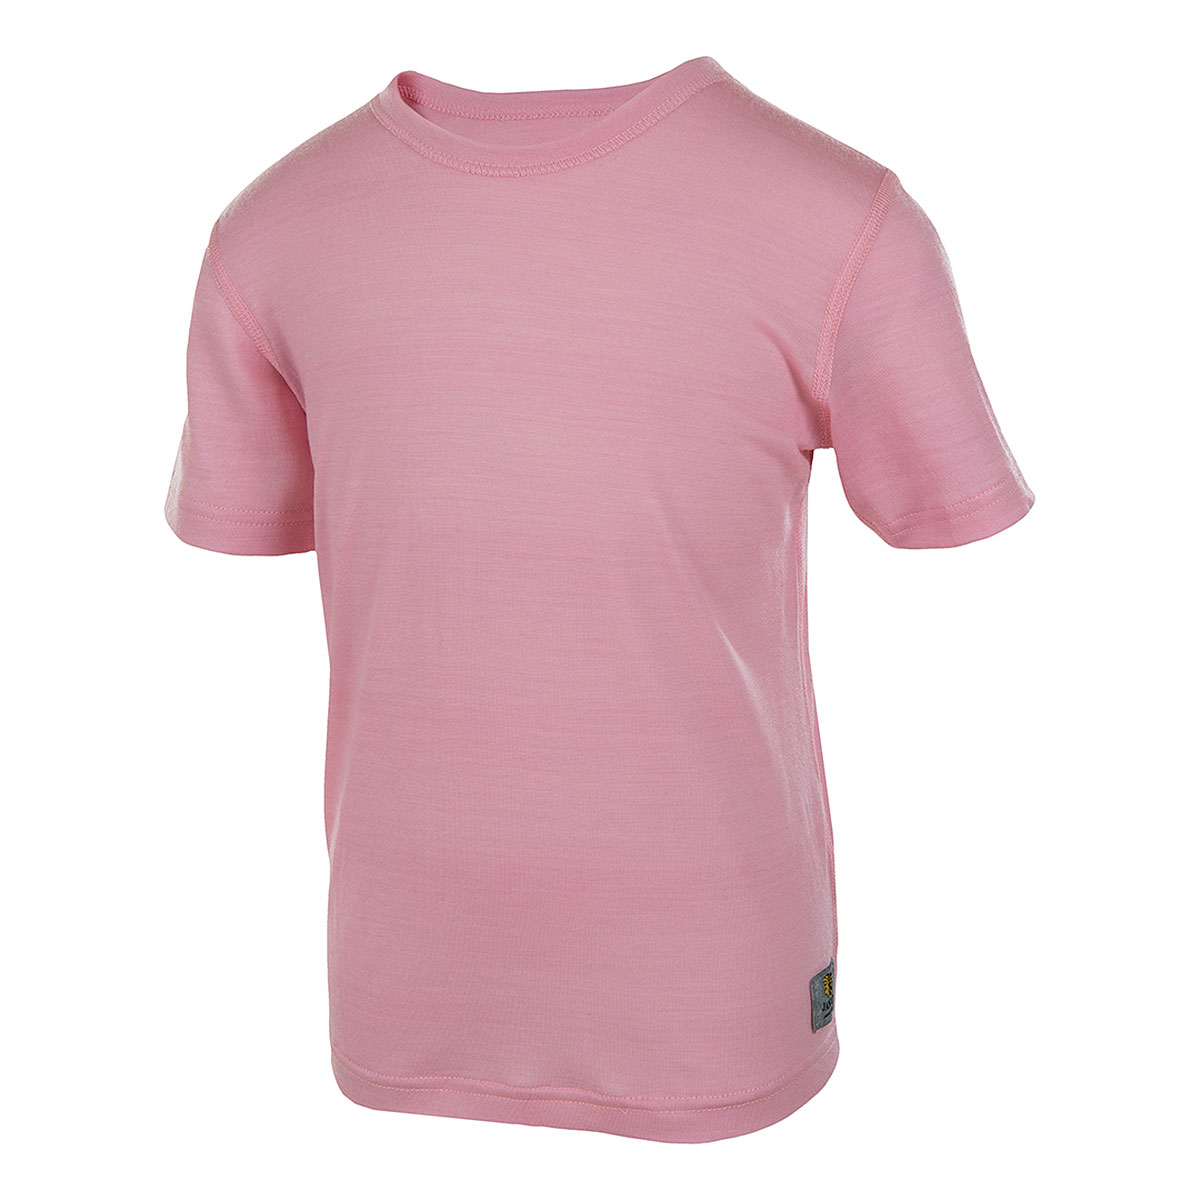 45151 Janus LightWool t-shirt i 100% merinoull rosa